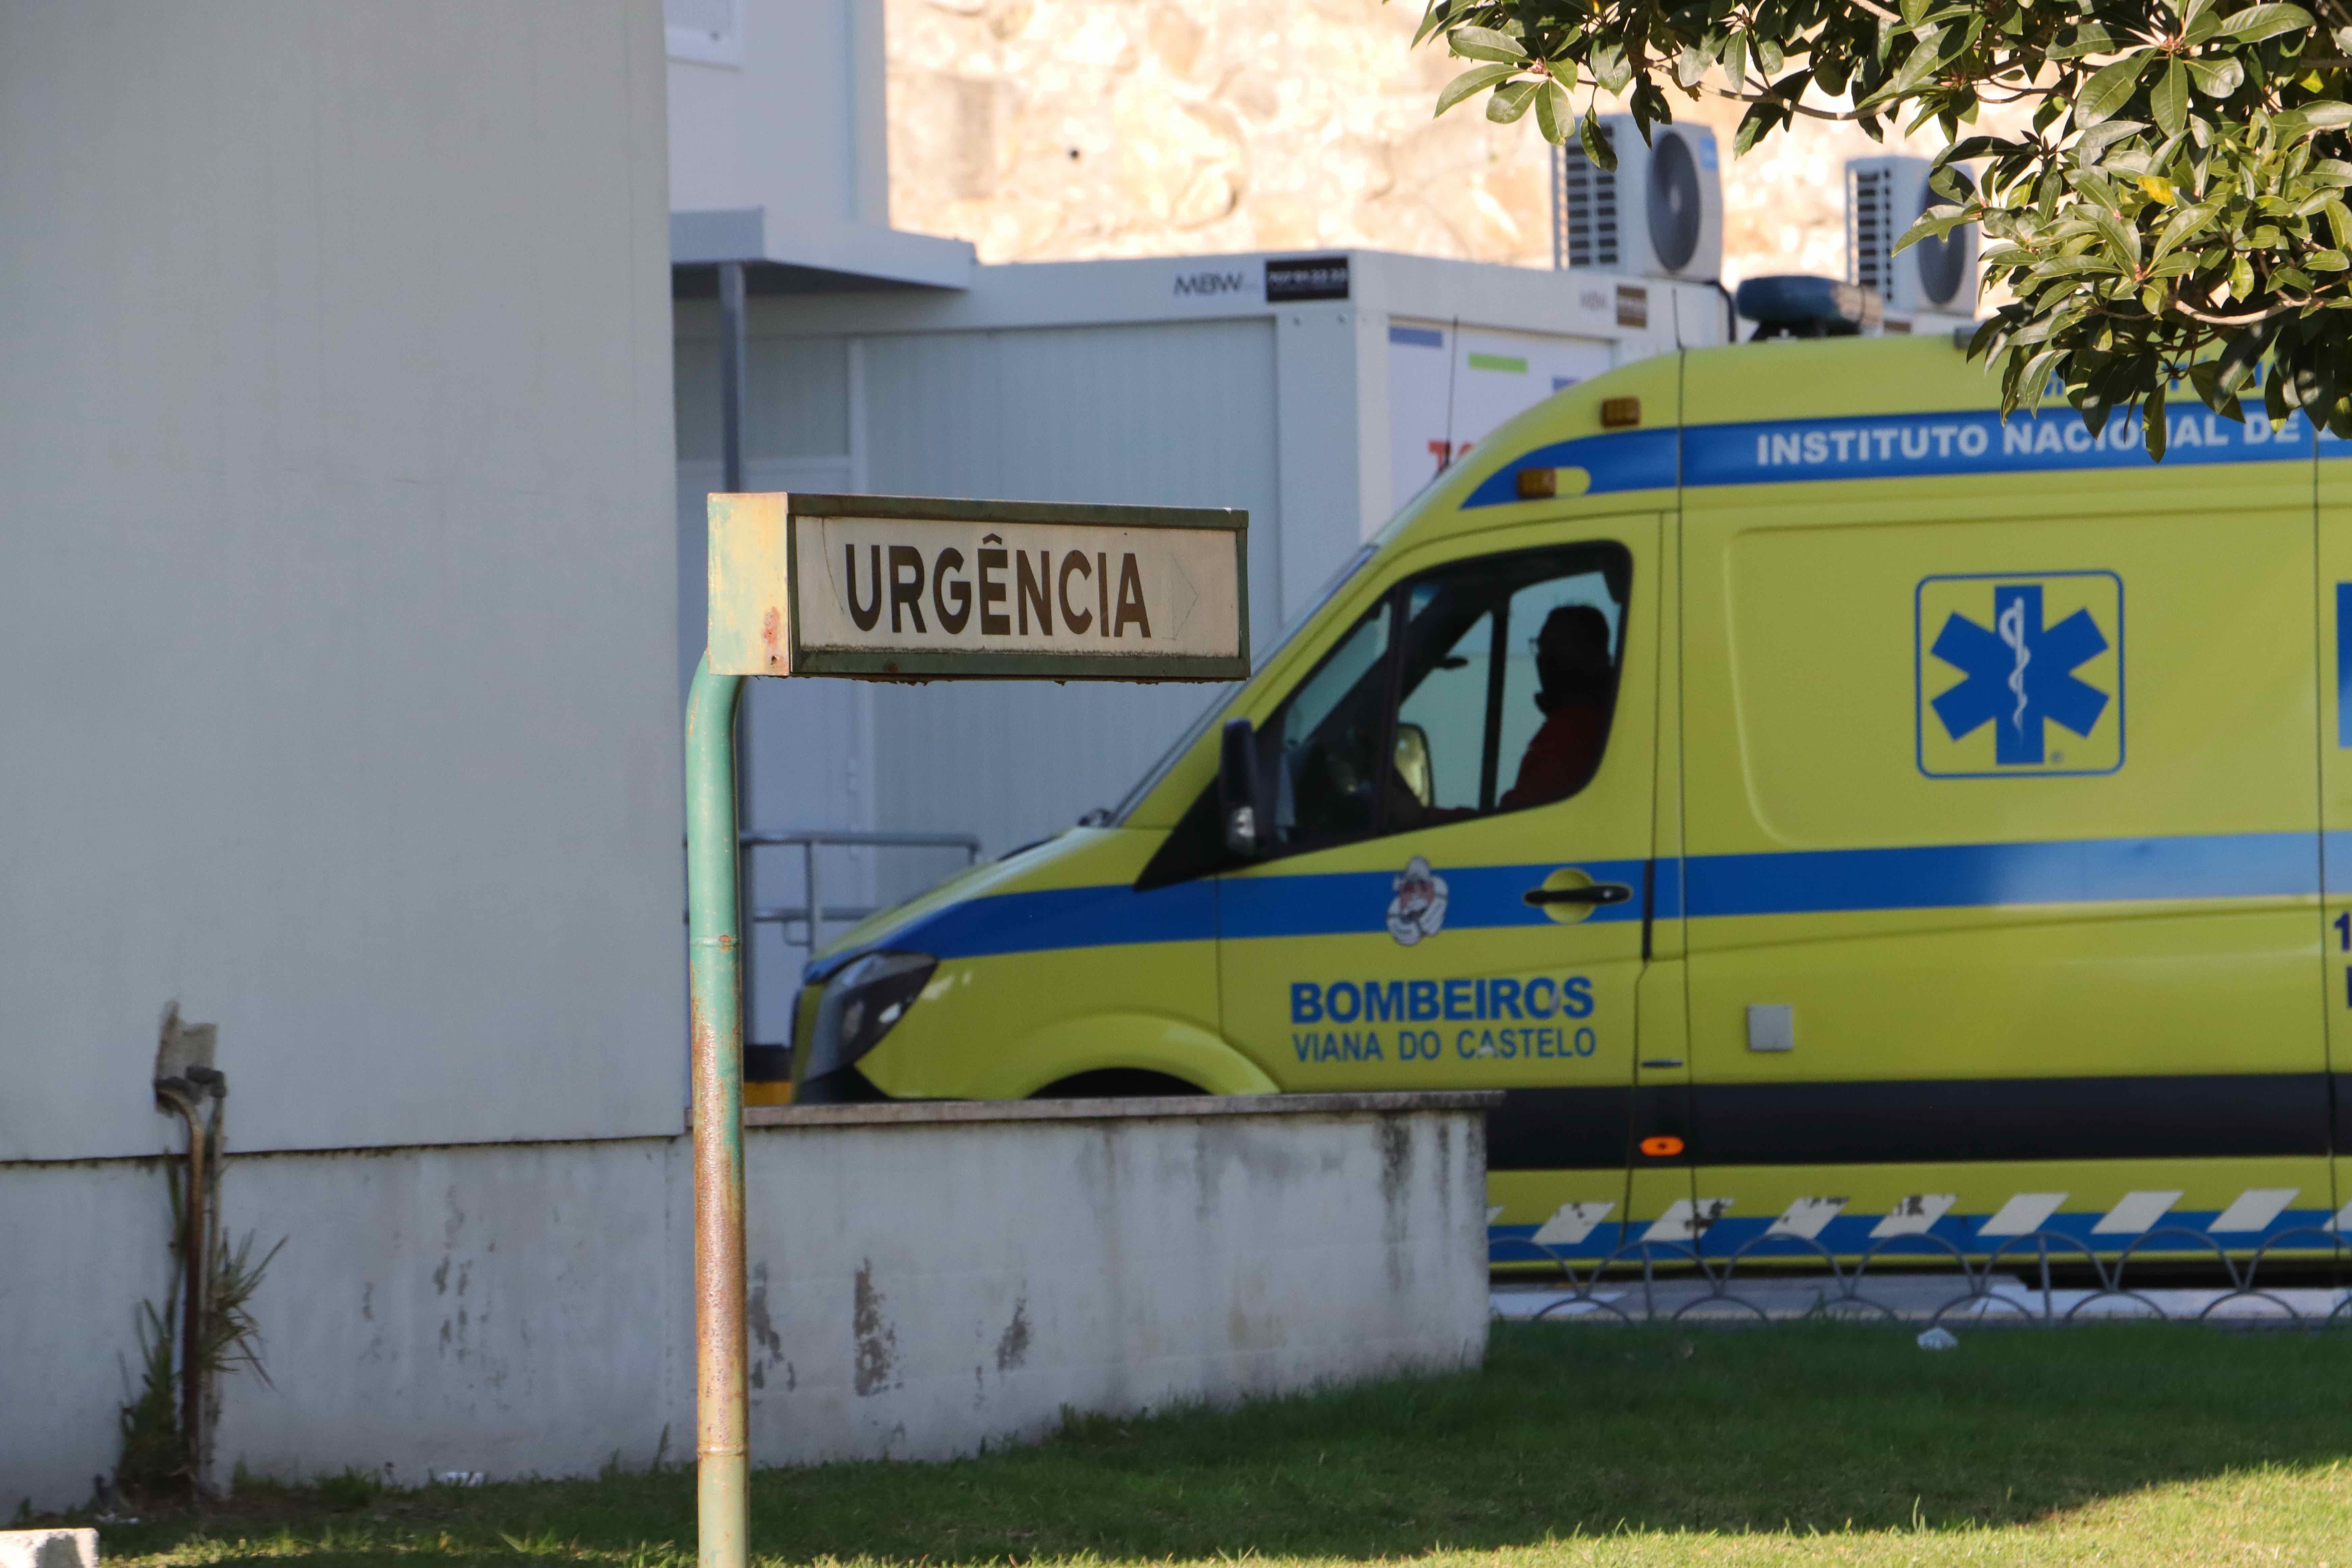 Arcos de Valdevez: Acidente com ambulância faz um morto e dois feridos no IC28